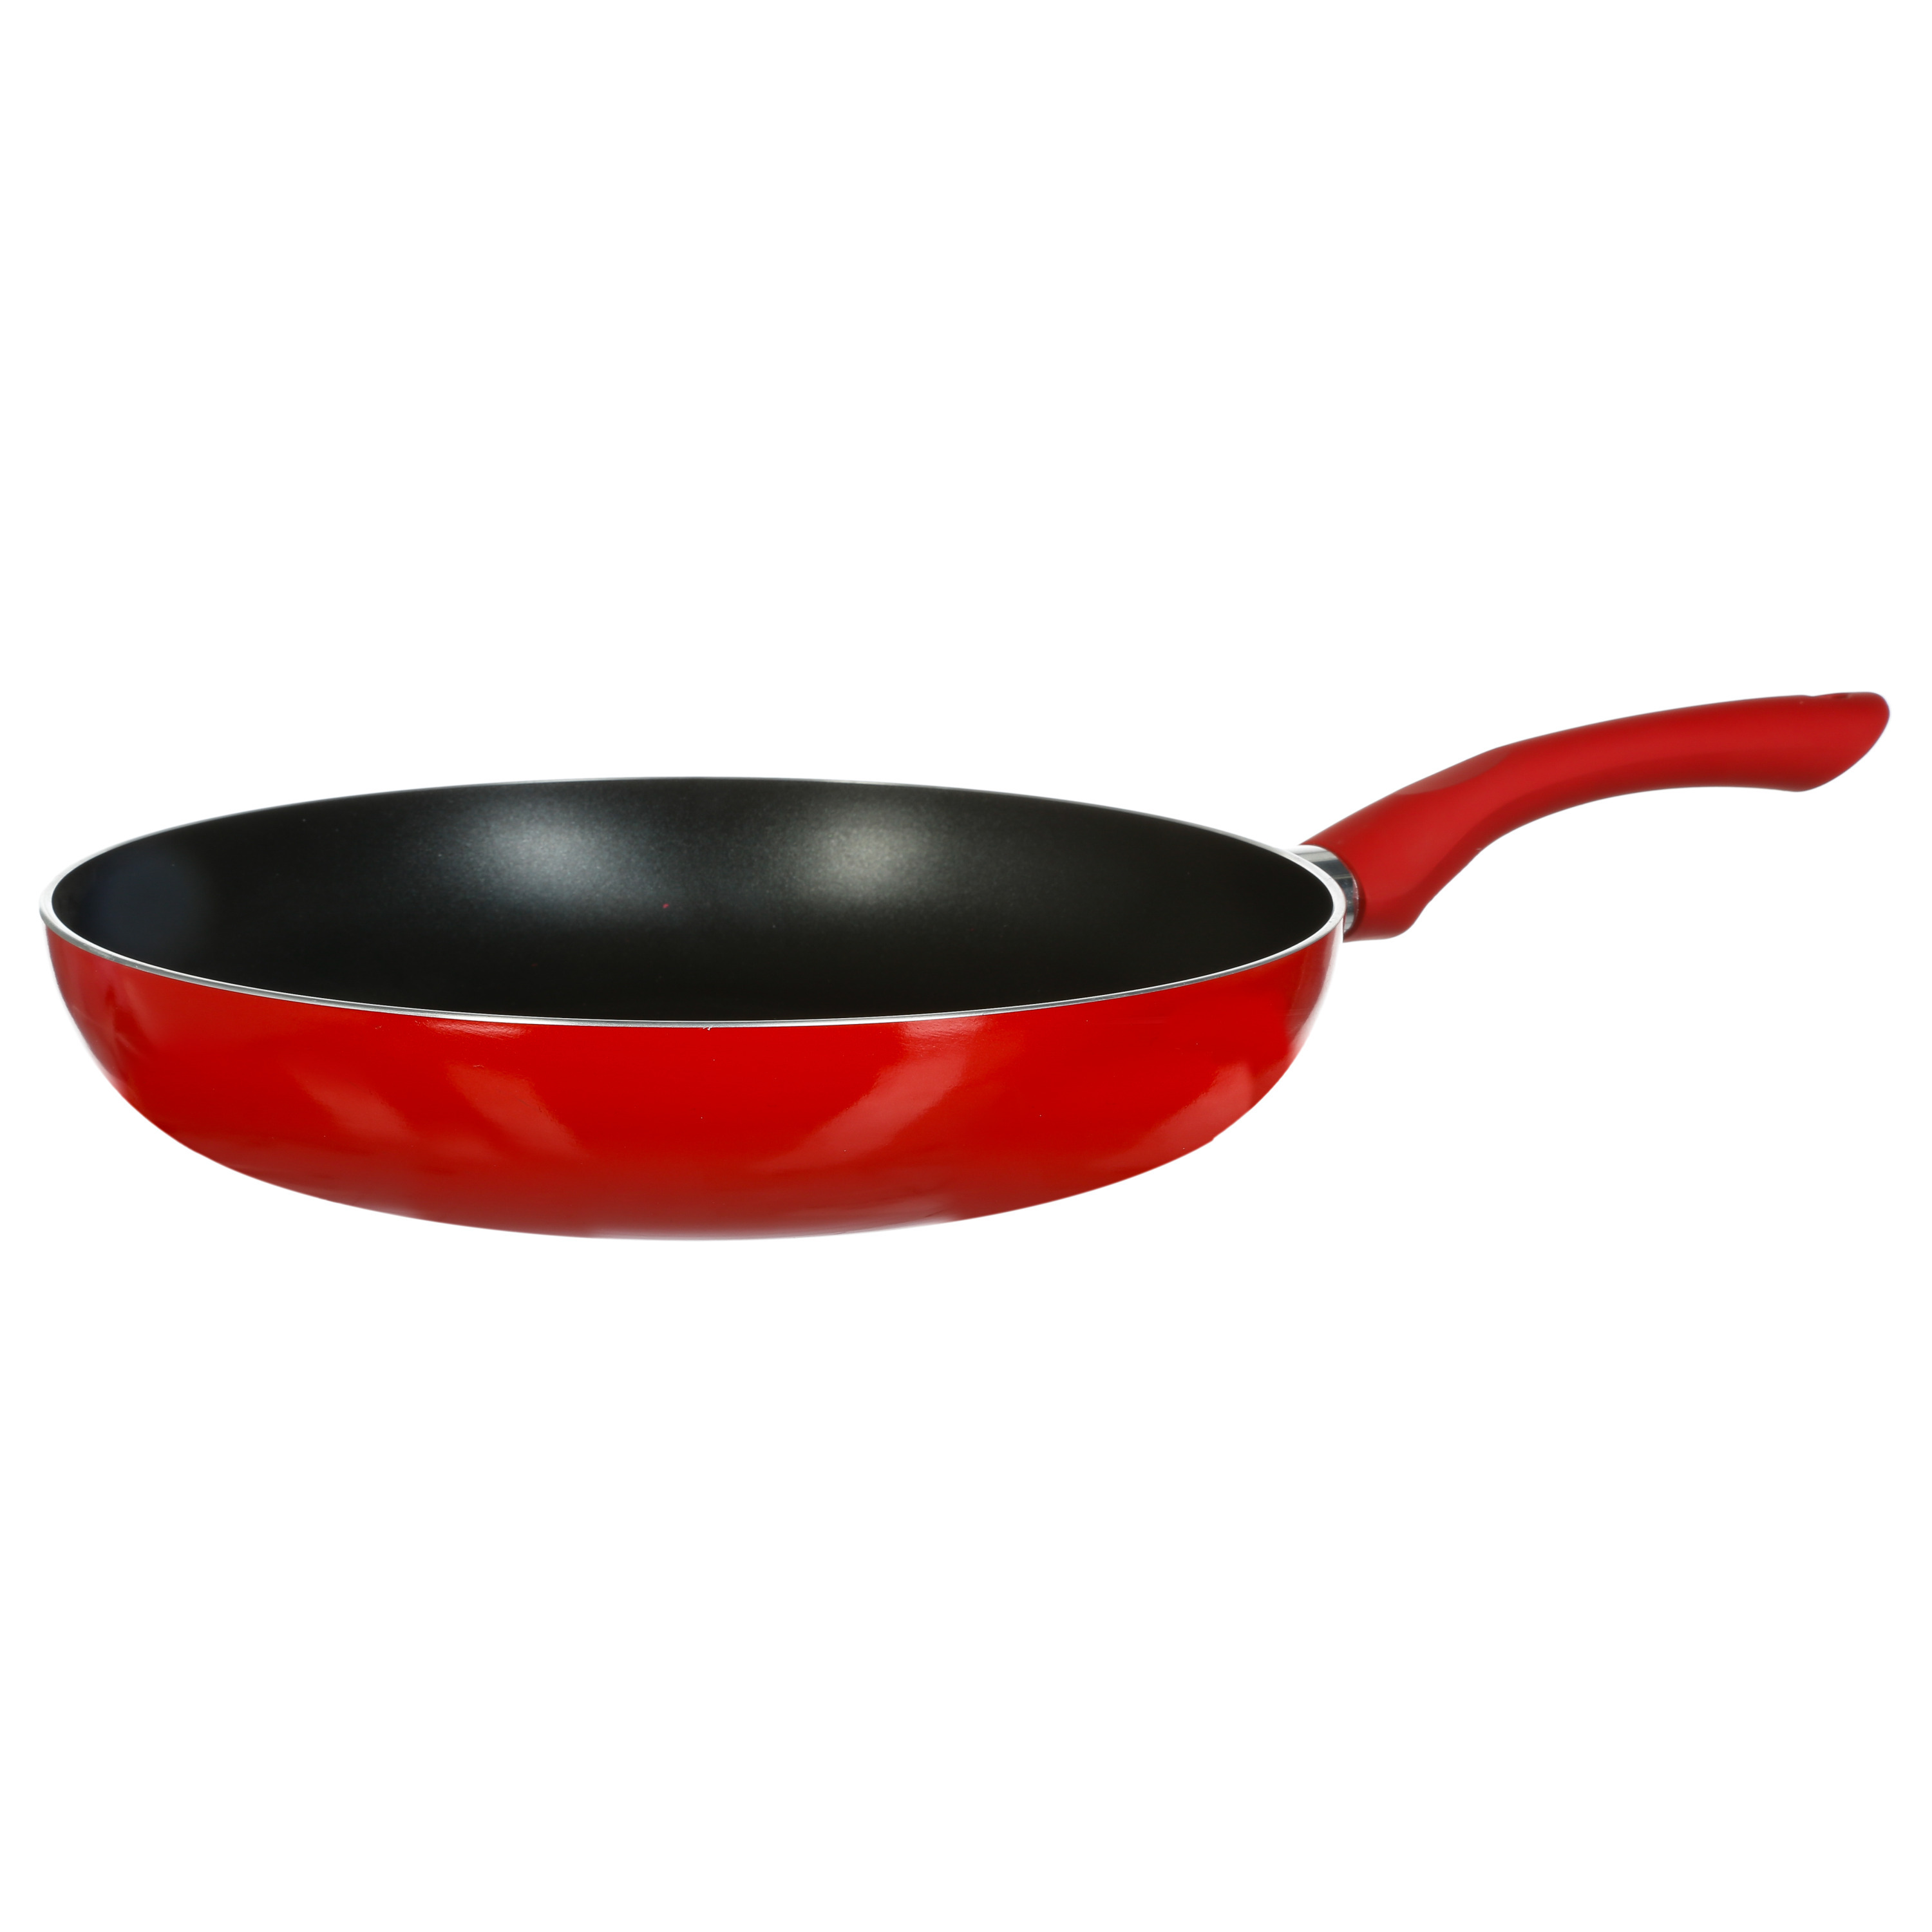 Koekenpan Alle kookplaten geschikt rood-zwart dia 28 cm